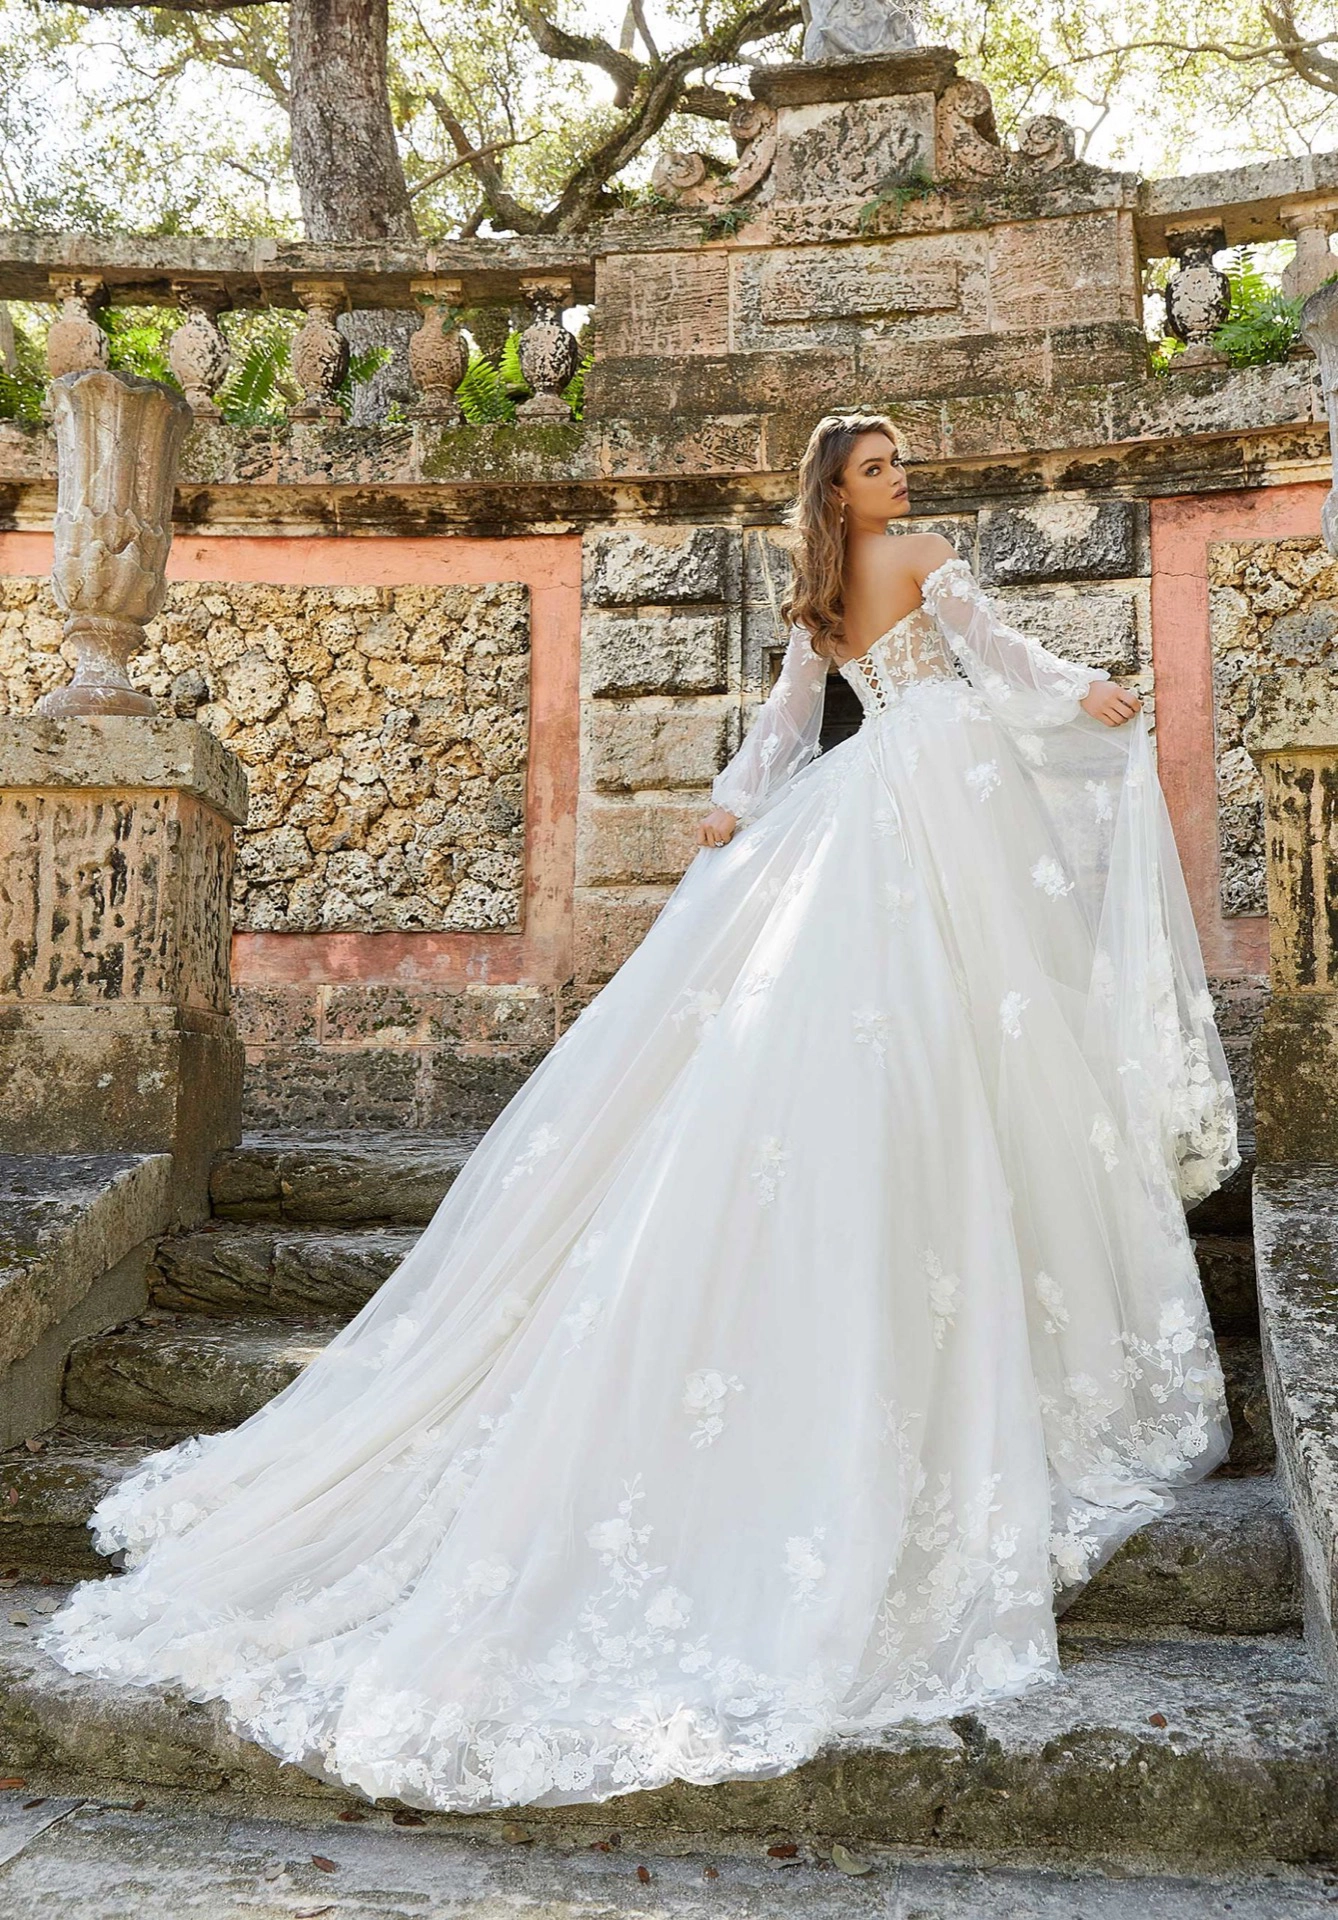 Mulher de cabelos castanhos claros usando um vestido de noiva branco de cauda longa. Ela está subindo uma escada de pedra olha para trás segurando as laterais do vestido.